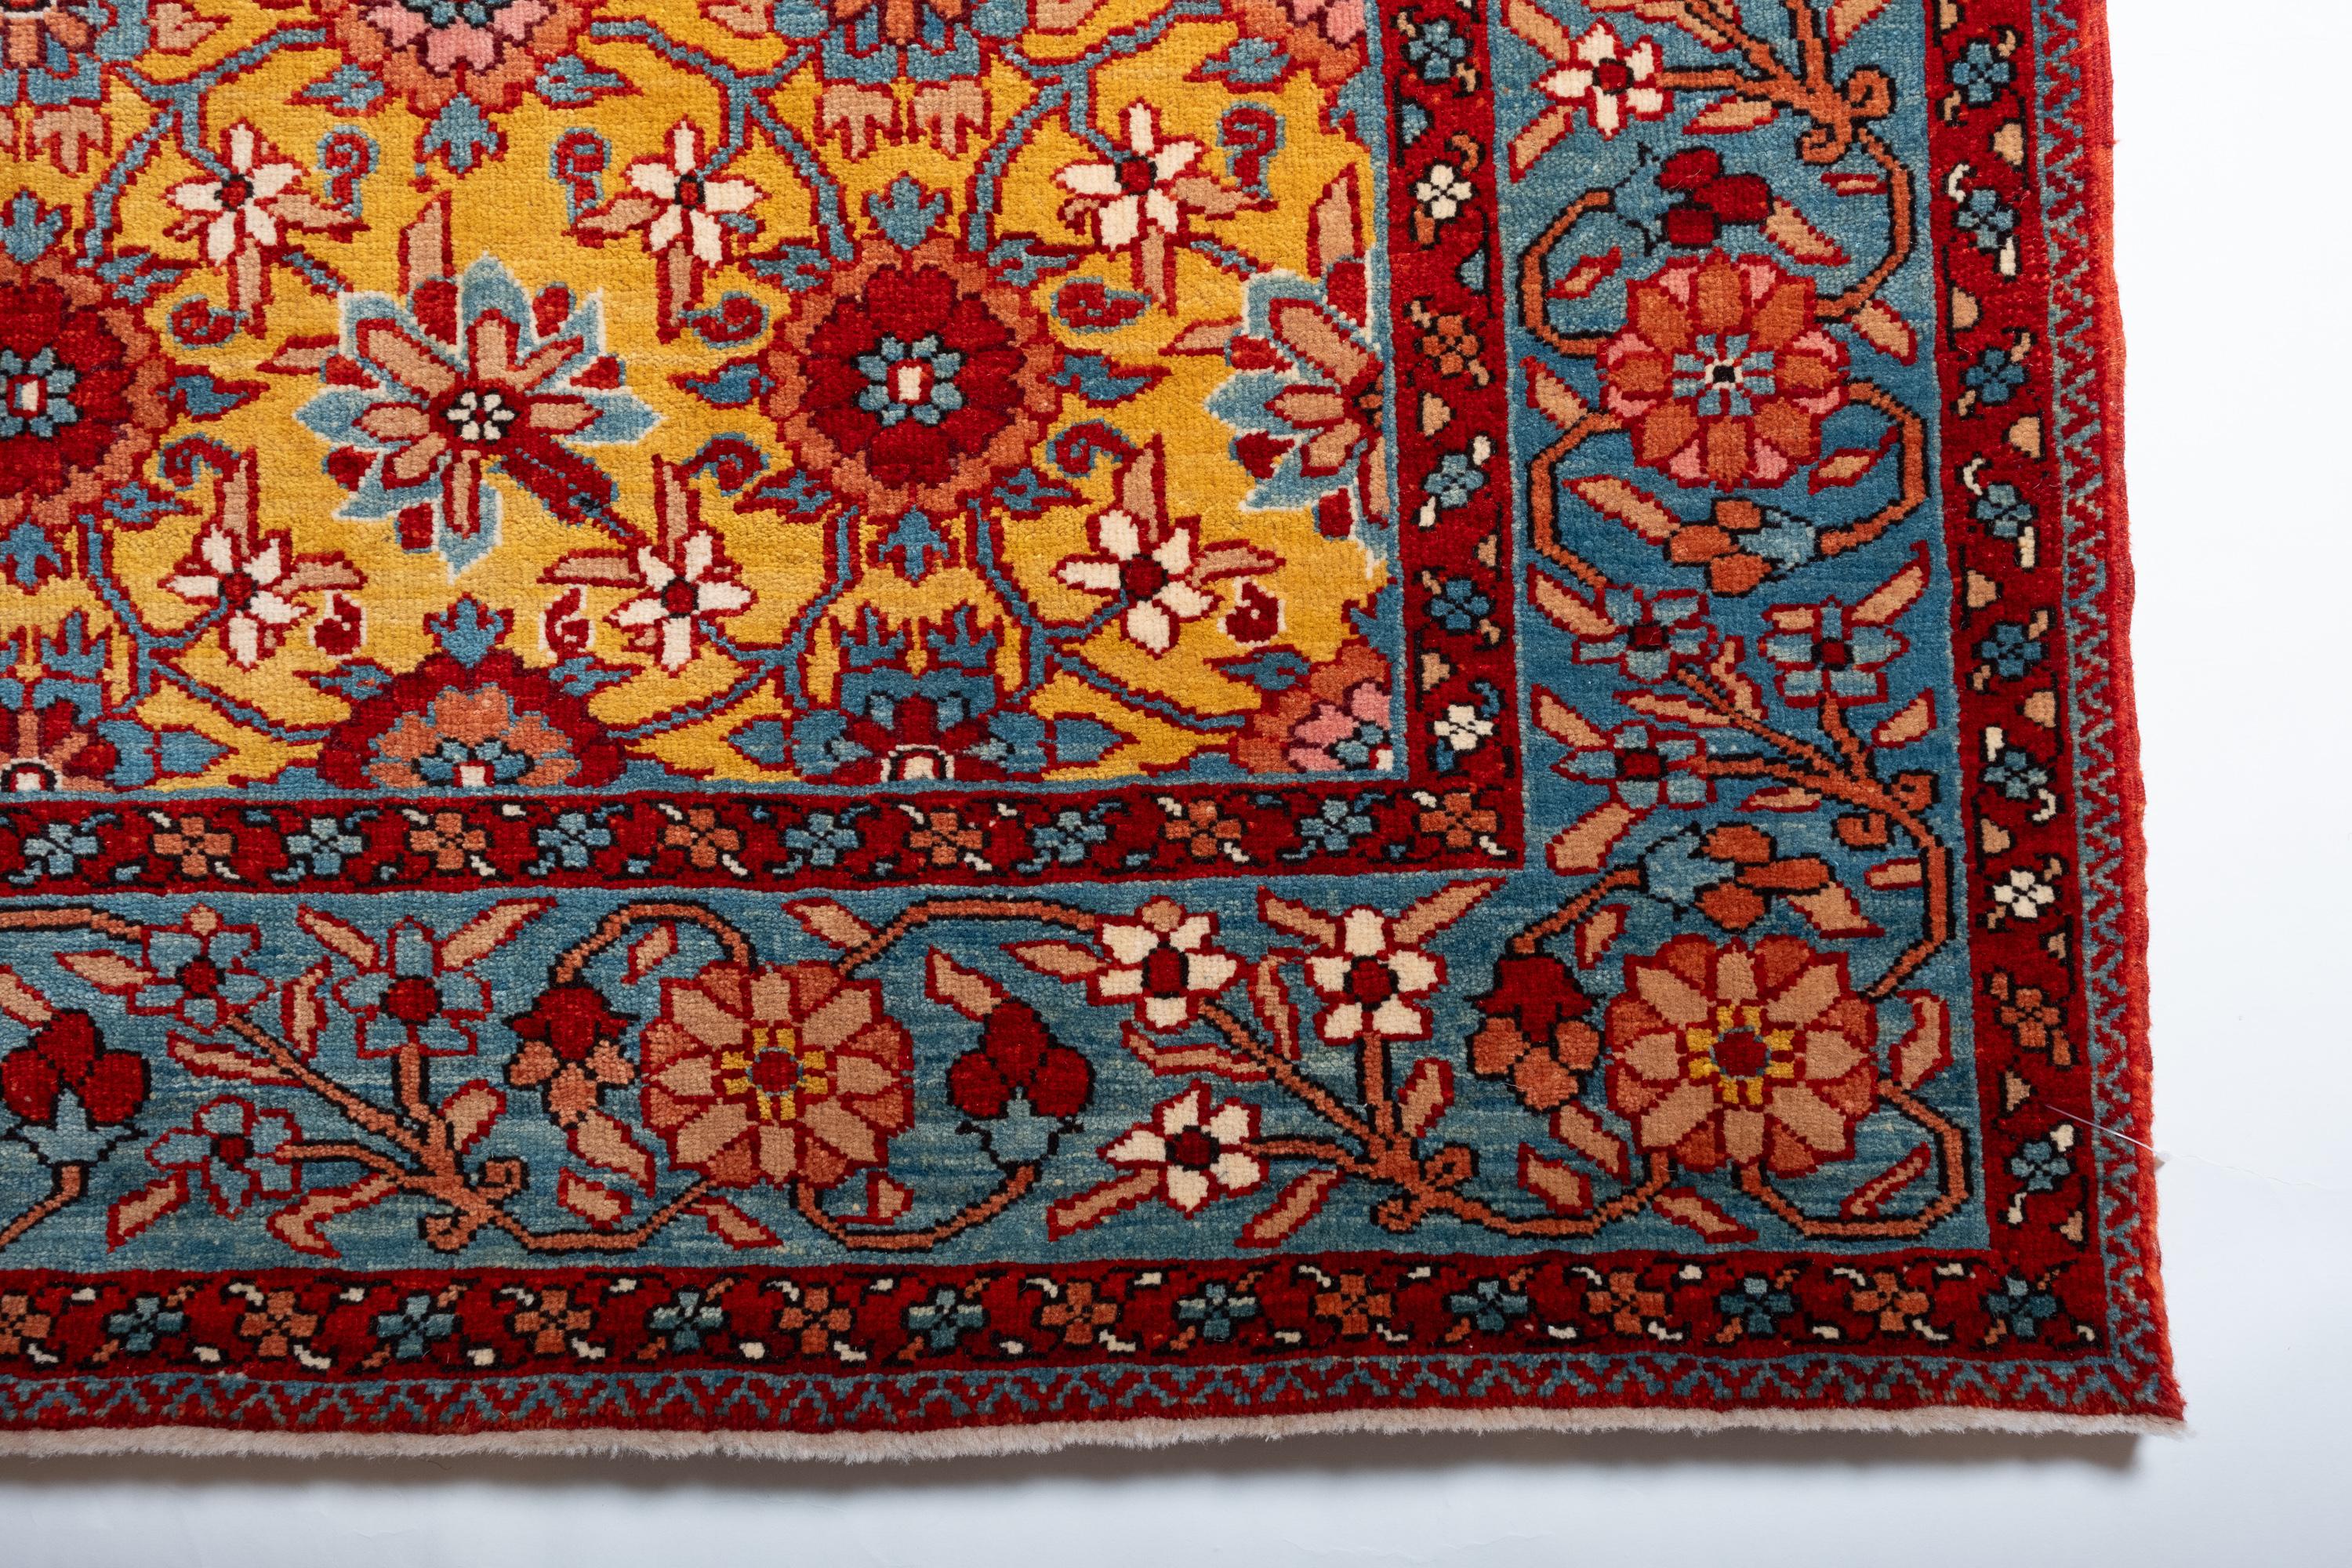 Die Quelle des Teppichs stammt aus dem Buch Antique Rugs of Kurdistan A Historical Legacy of Woven Art, James D. Burns, 2002 nr.2. Es handelt sich um ein exklusives Exemplar eines Teppichs mit Mina Khani-Gittermuster aus der Mitte des 19.